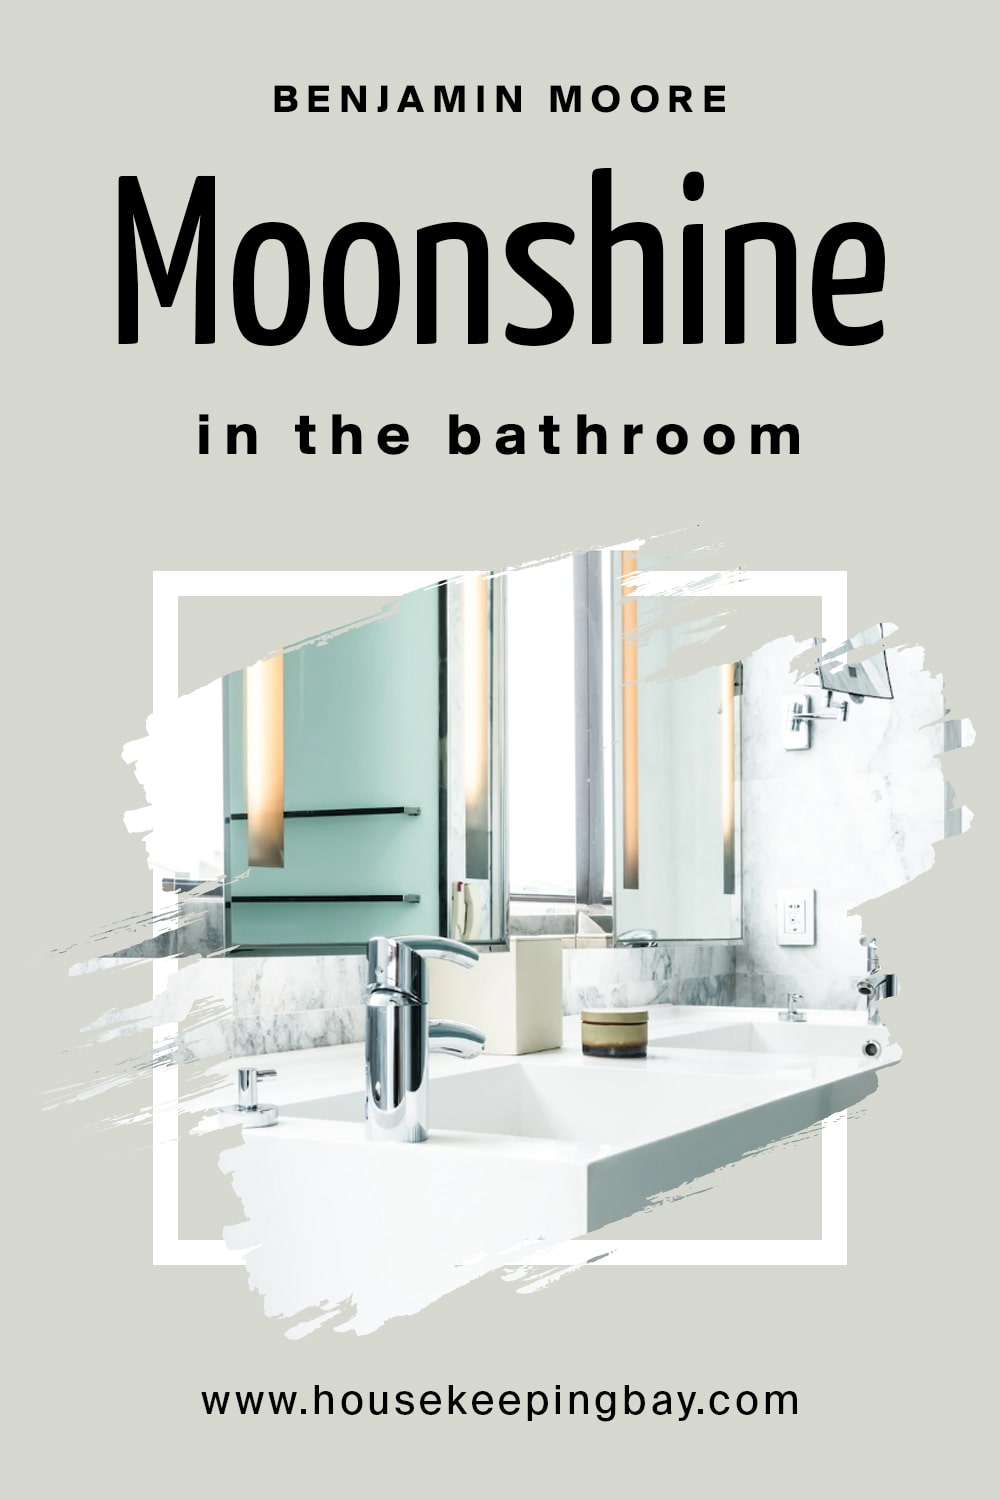 Benjamin Moore. Moonshine in the bathroom